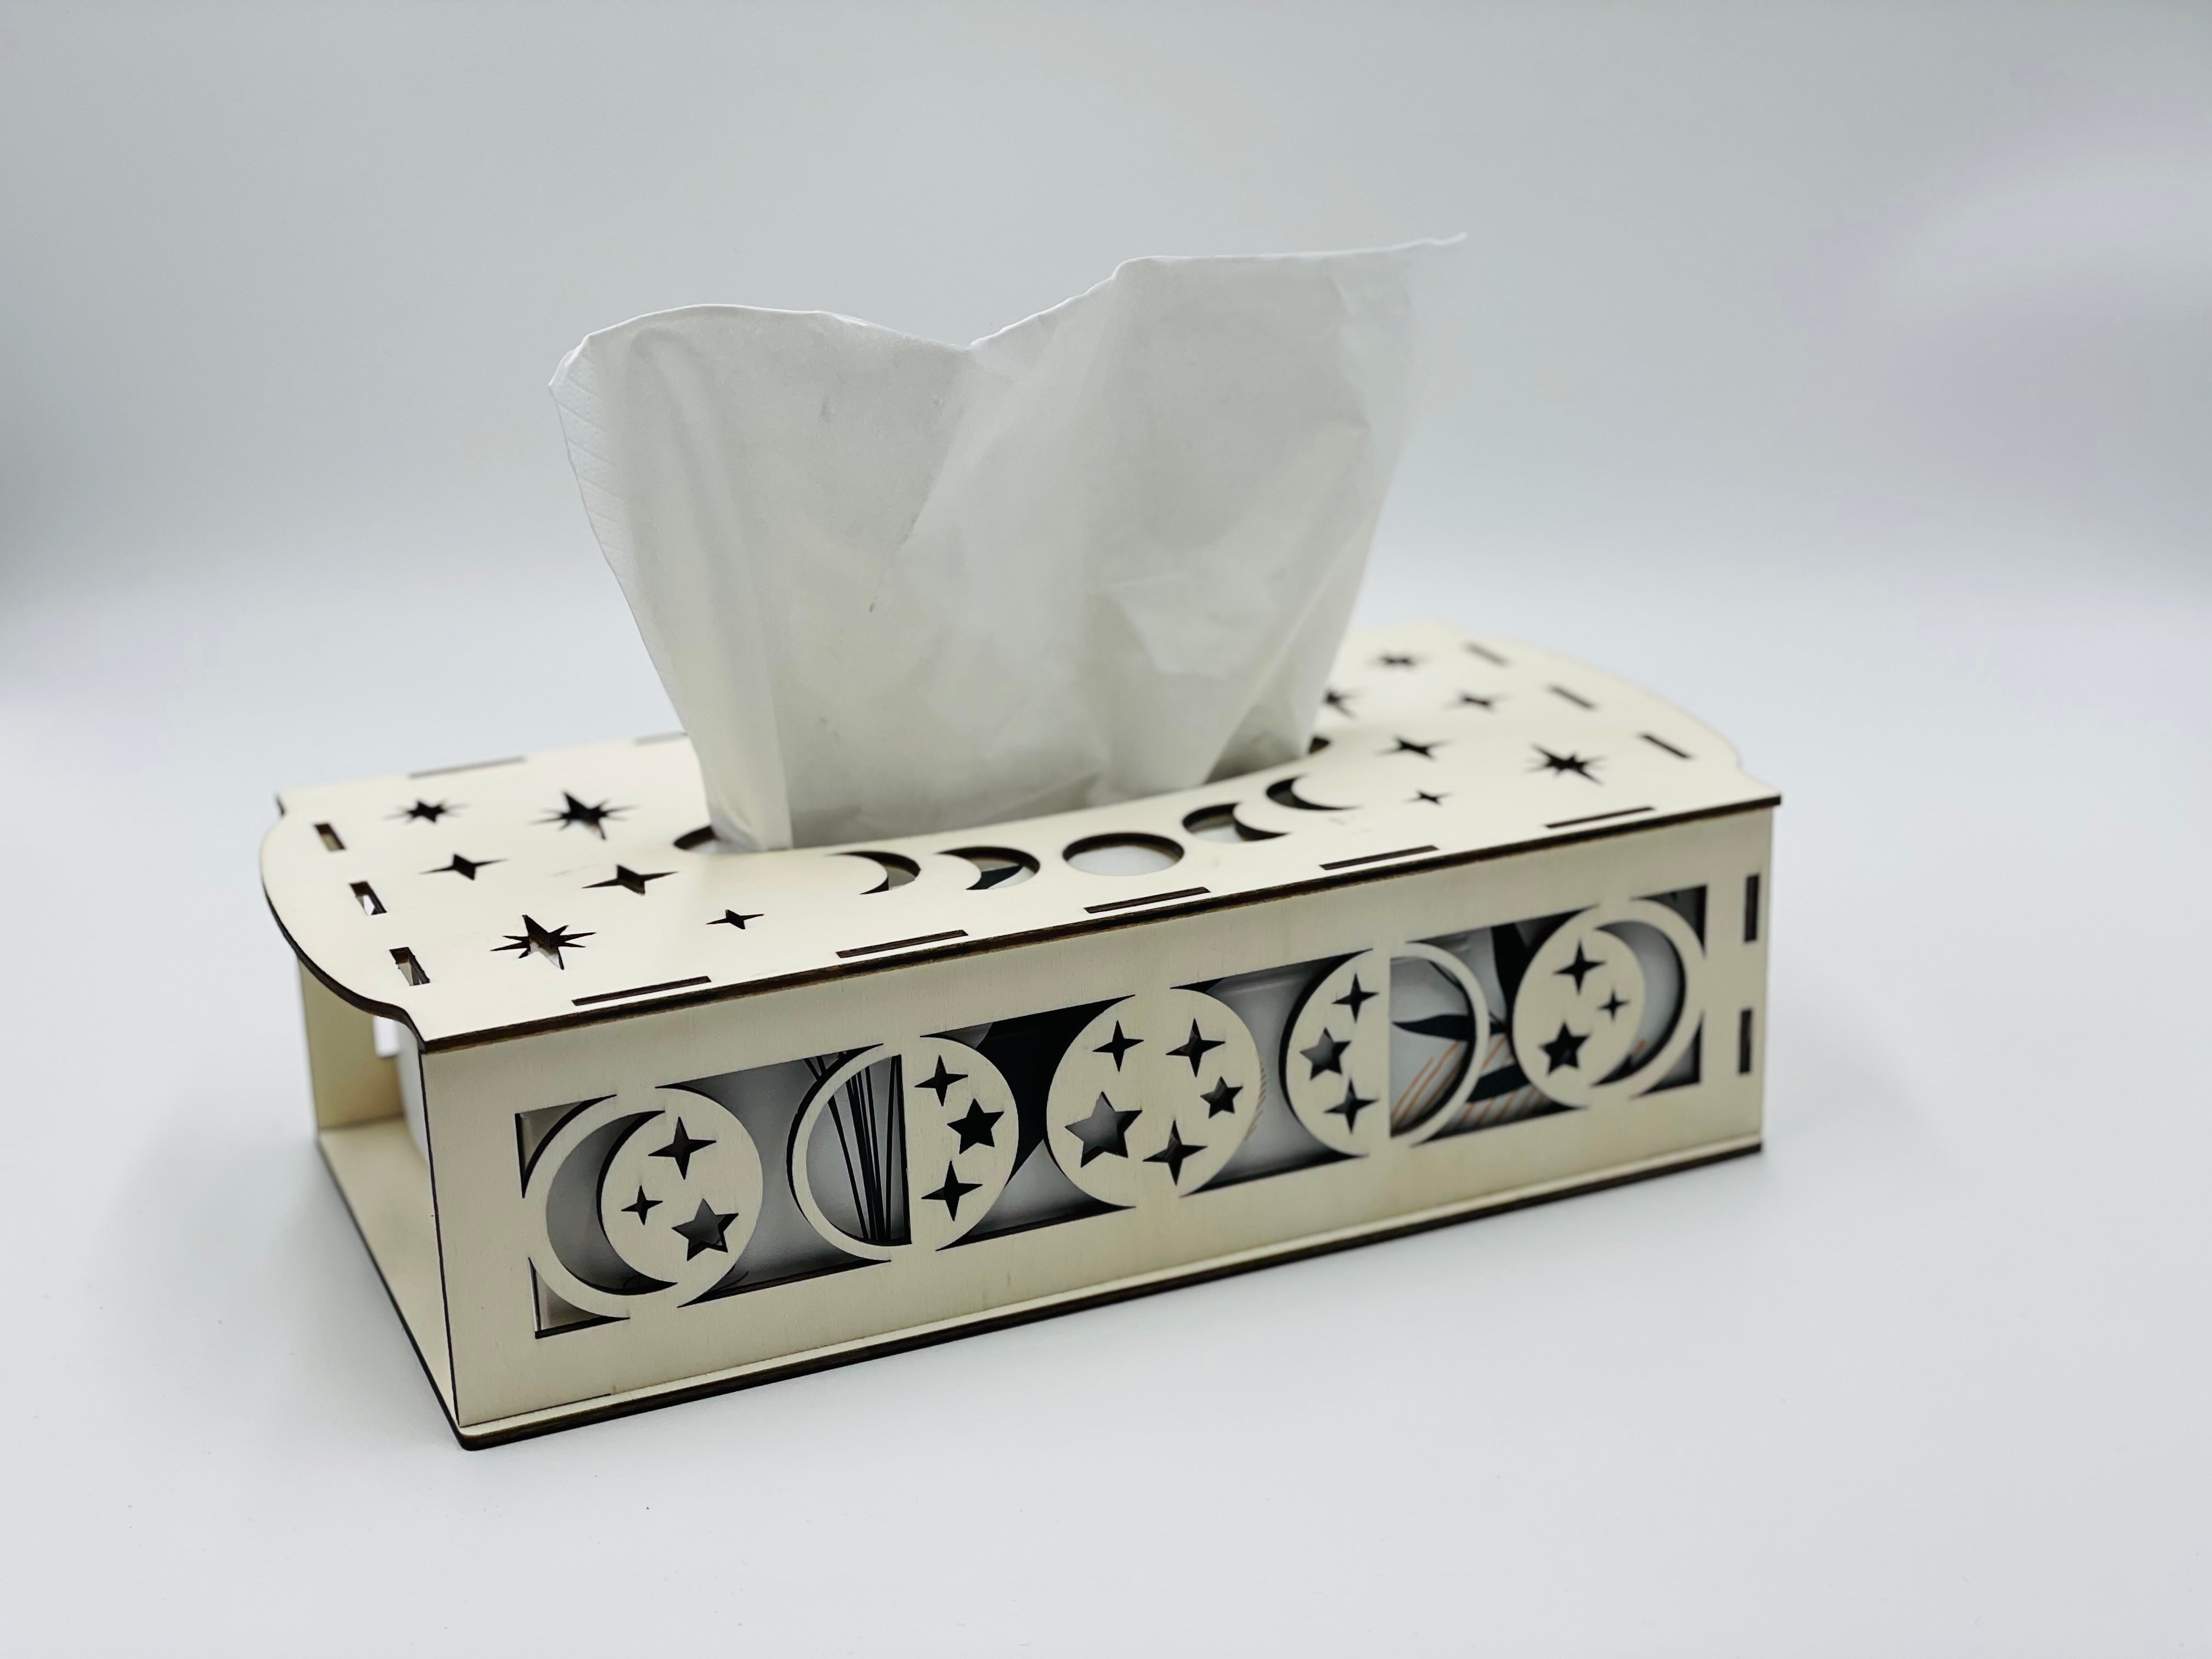 Taschentuch Box – Grimmcrafted